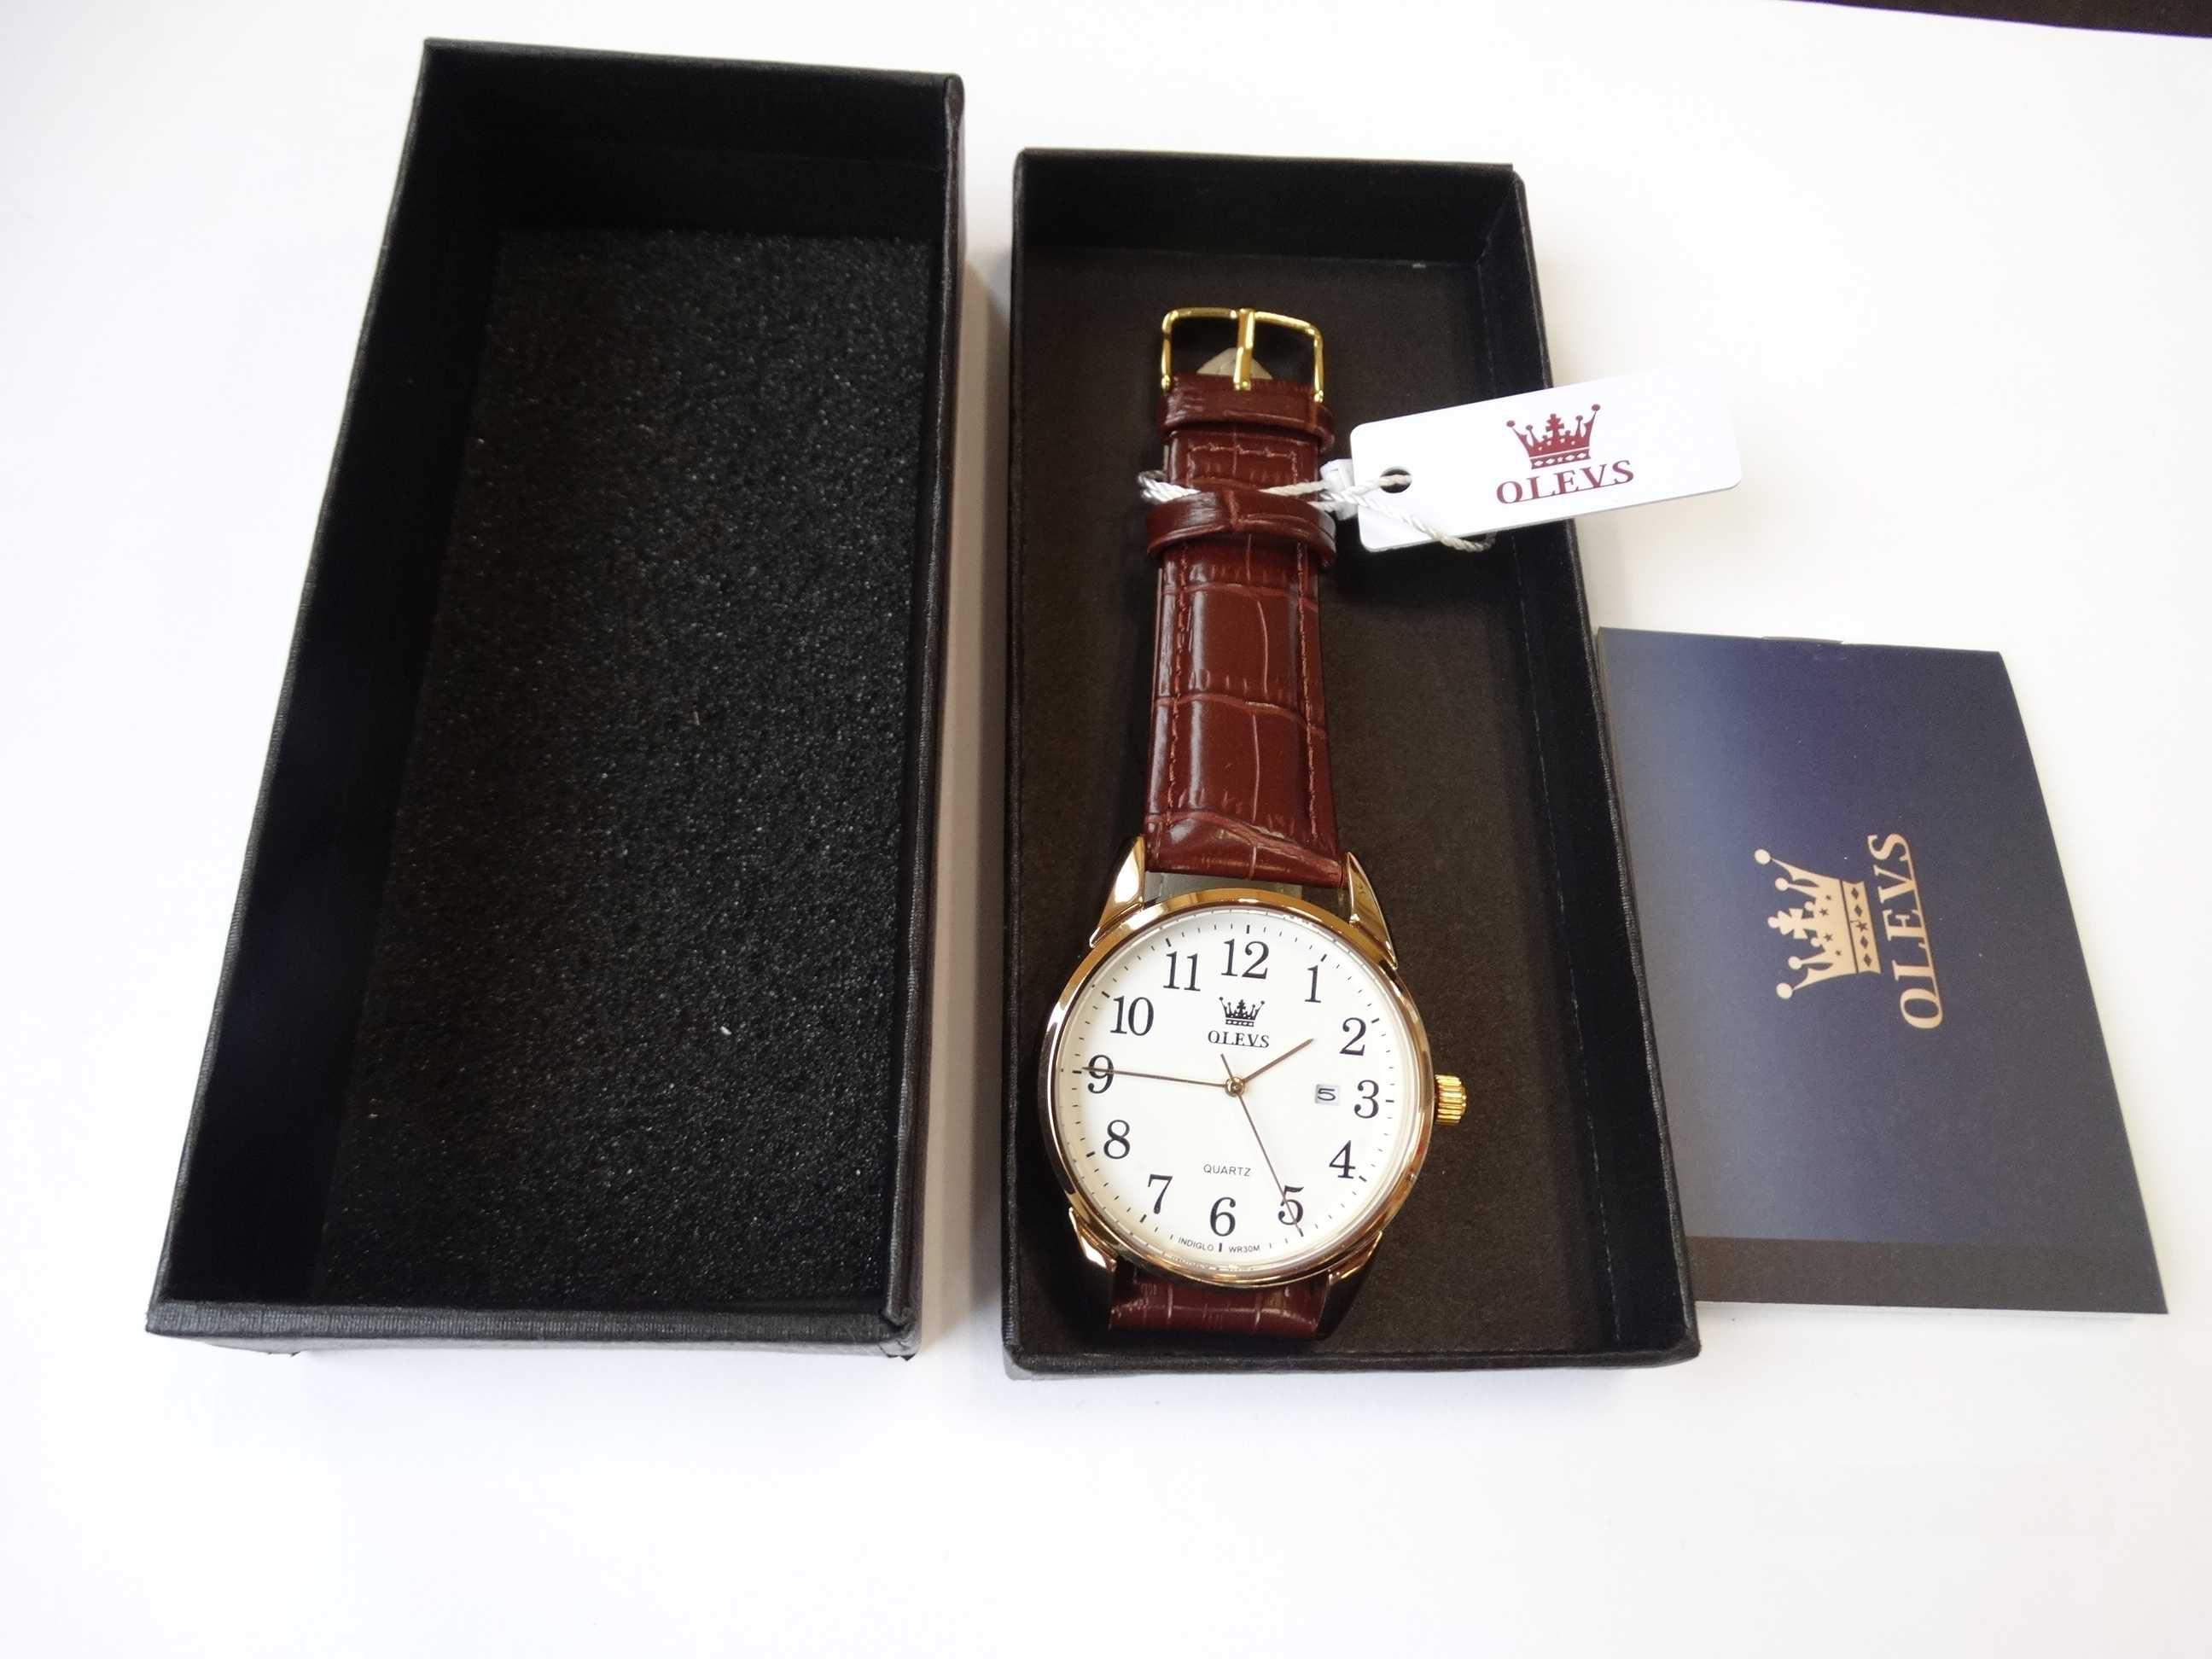 Zegarek męski kwarcowy Olevs złoty brązowy pasek biała tarcza datownik